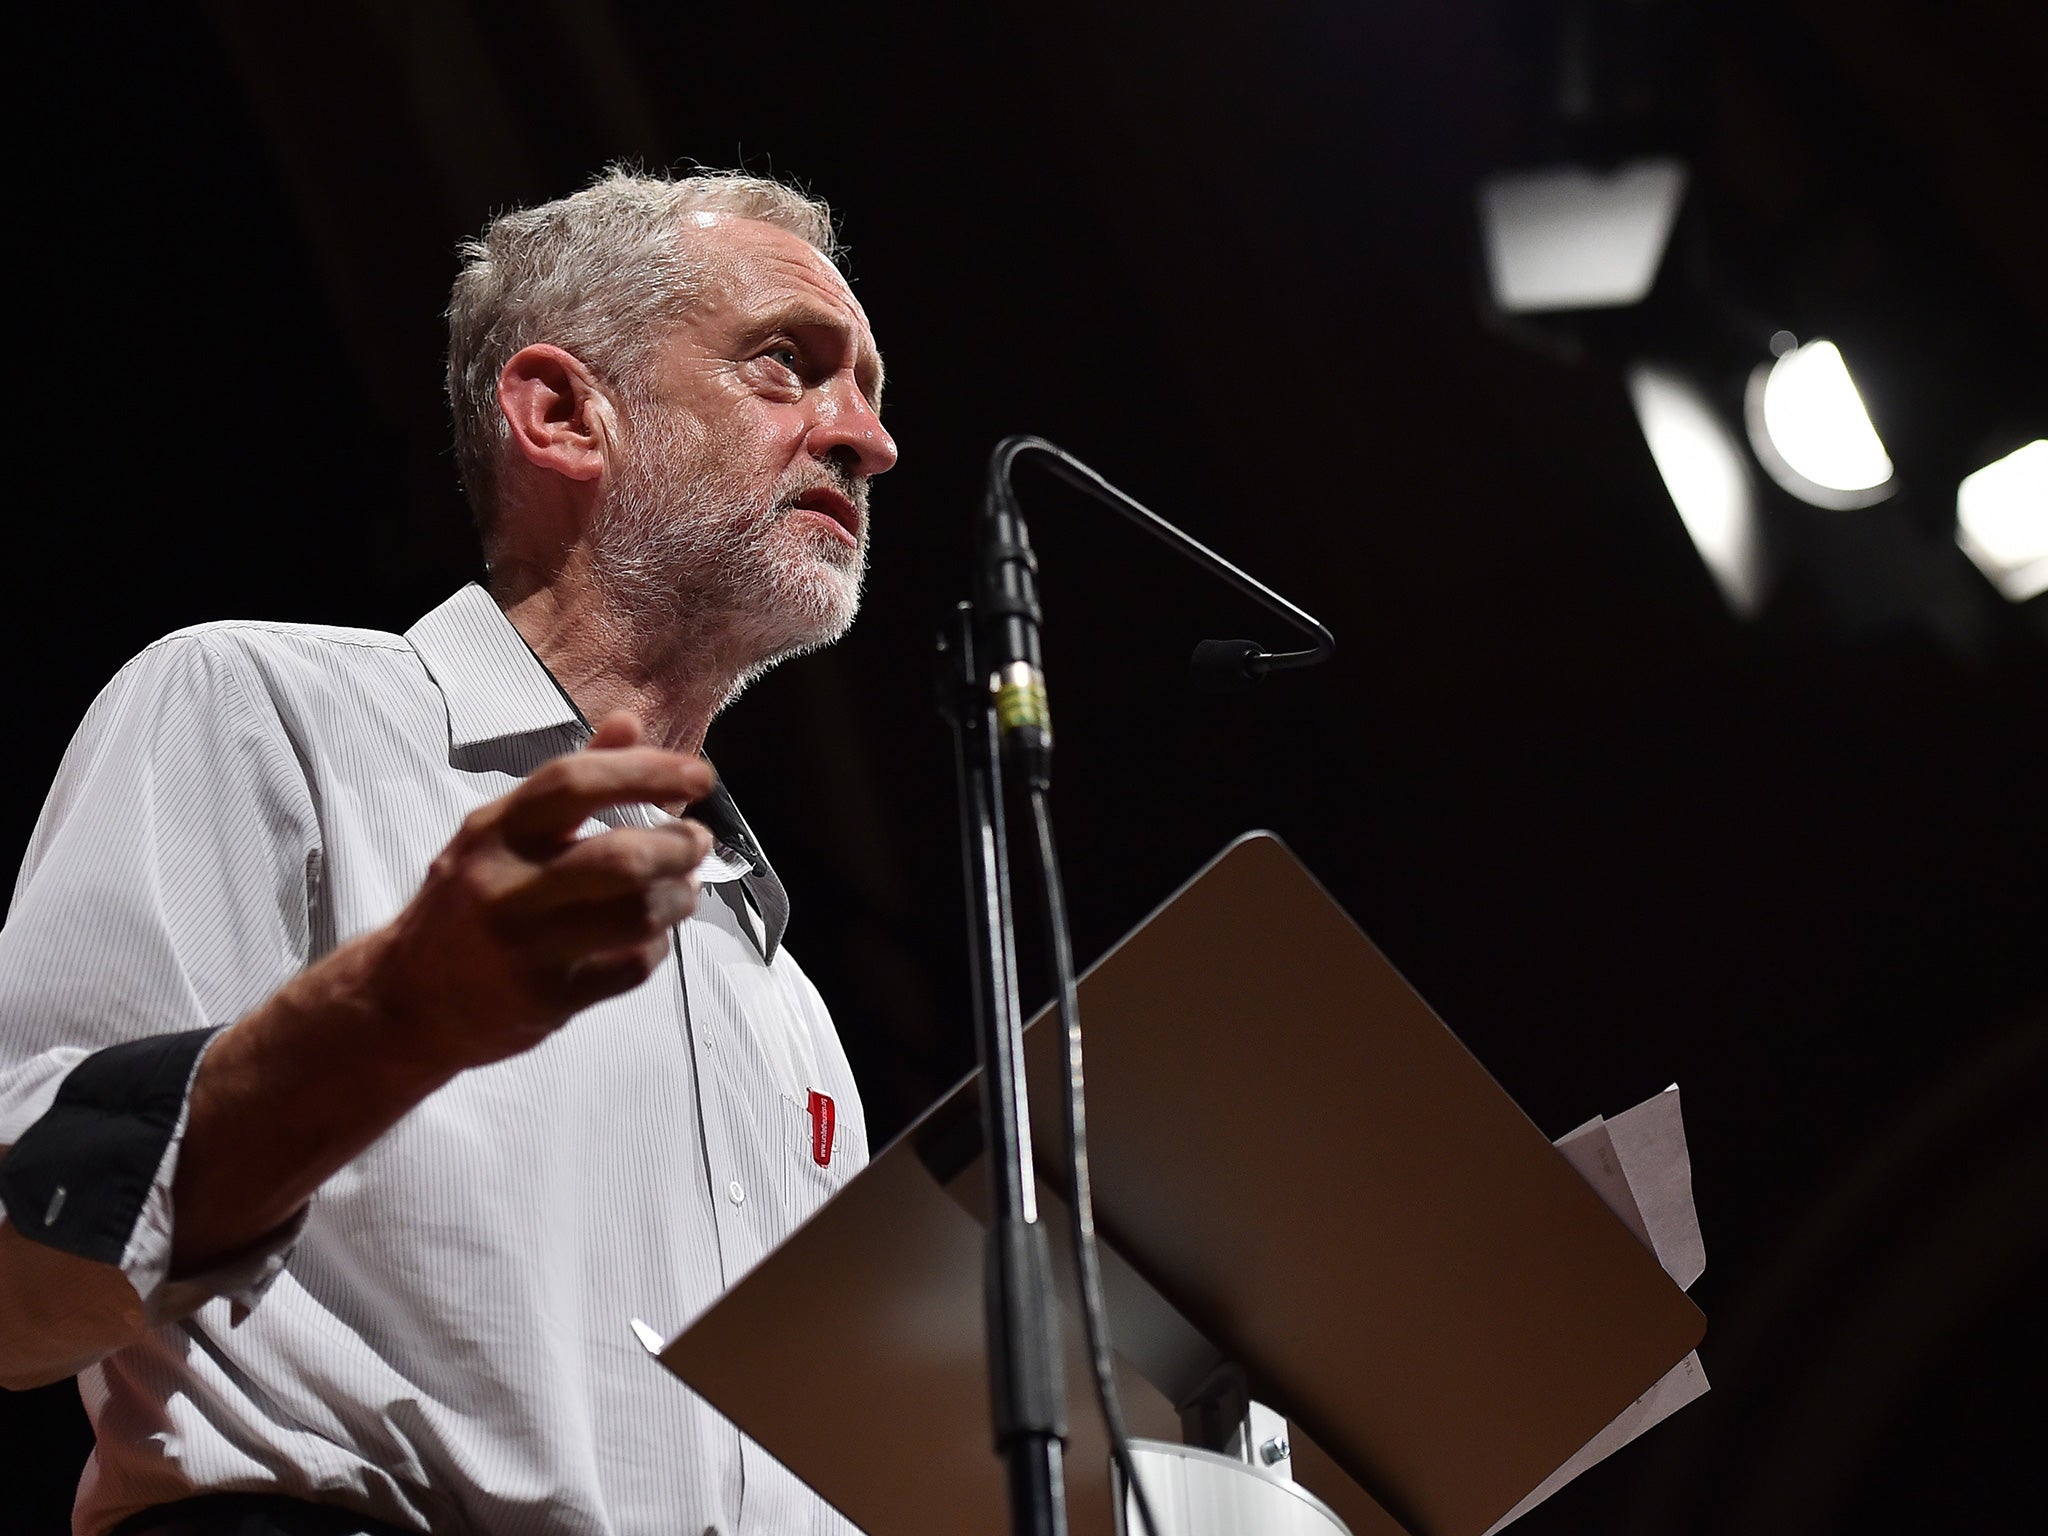 Jeremy Corbyn addresses a speech in west London